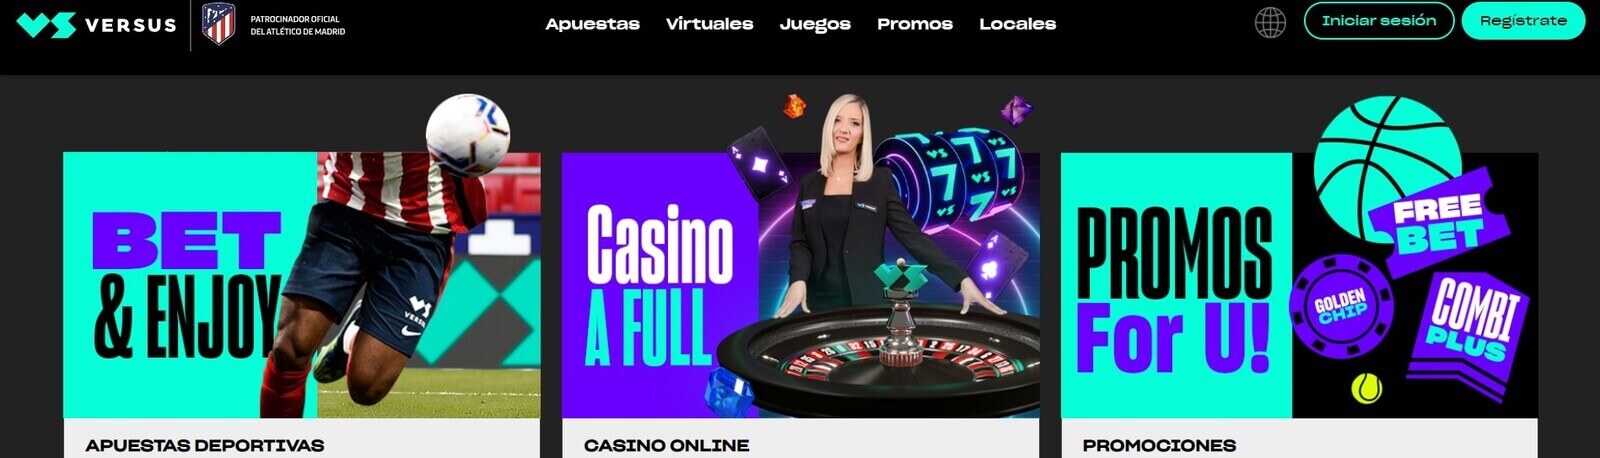 Página web de Versus Casino